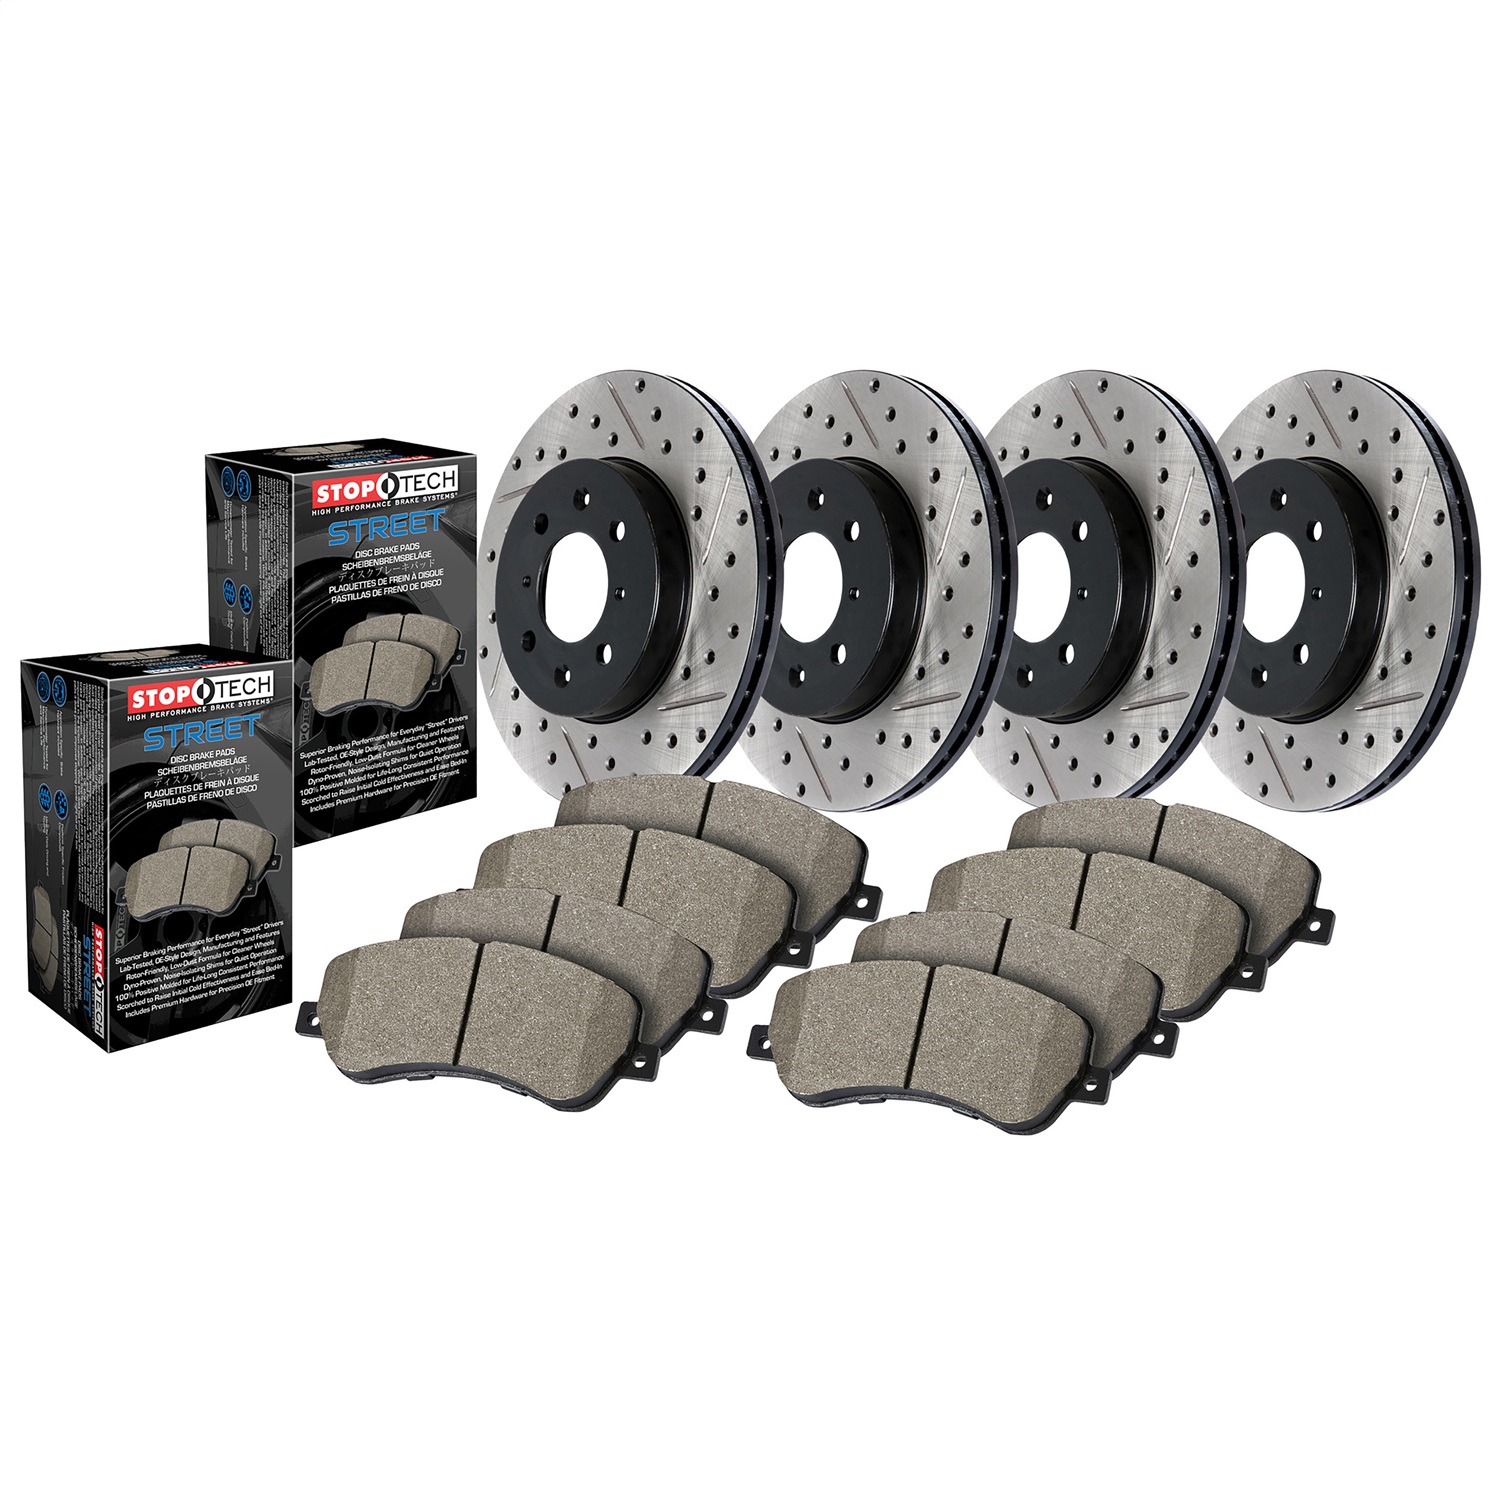 StopTech 935.65043 Disc Brake Upgrade Kit